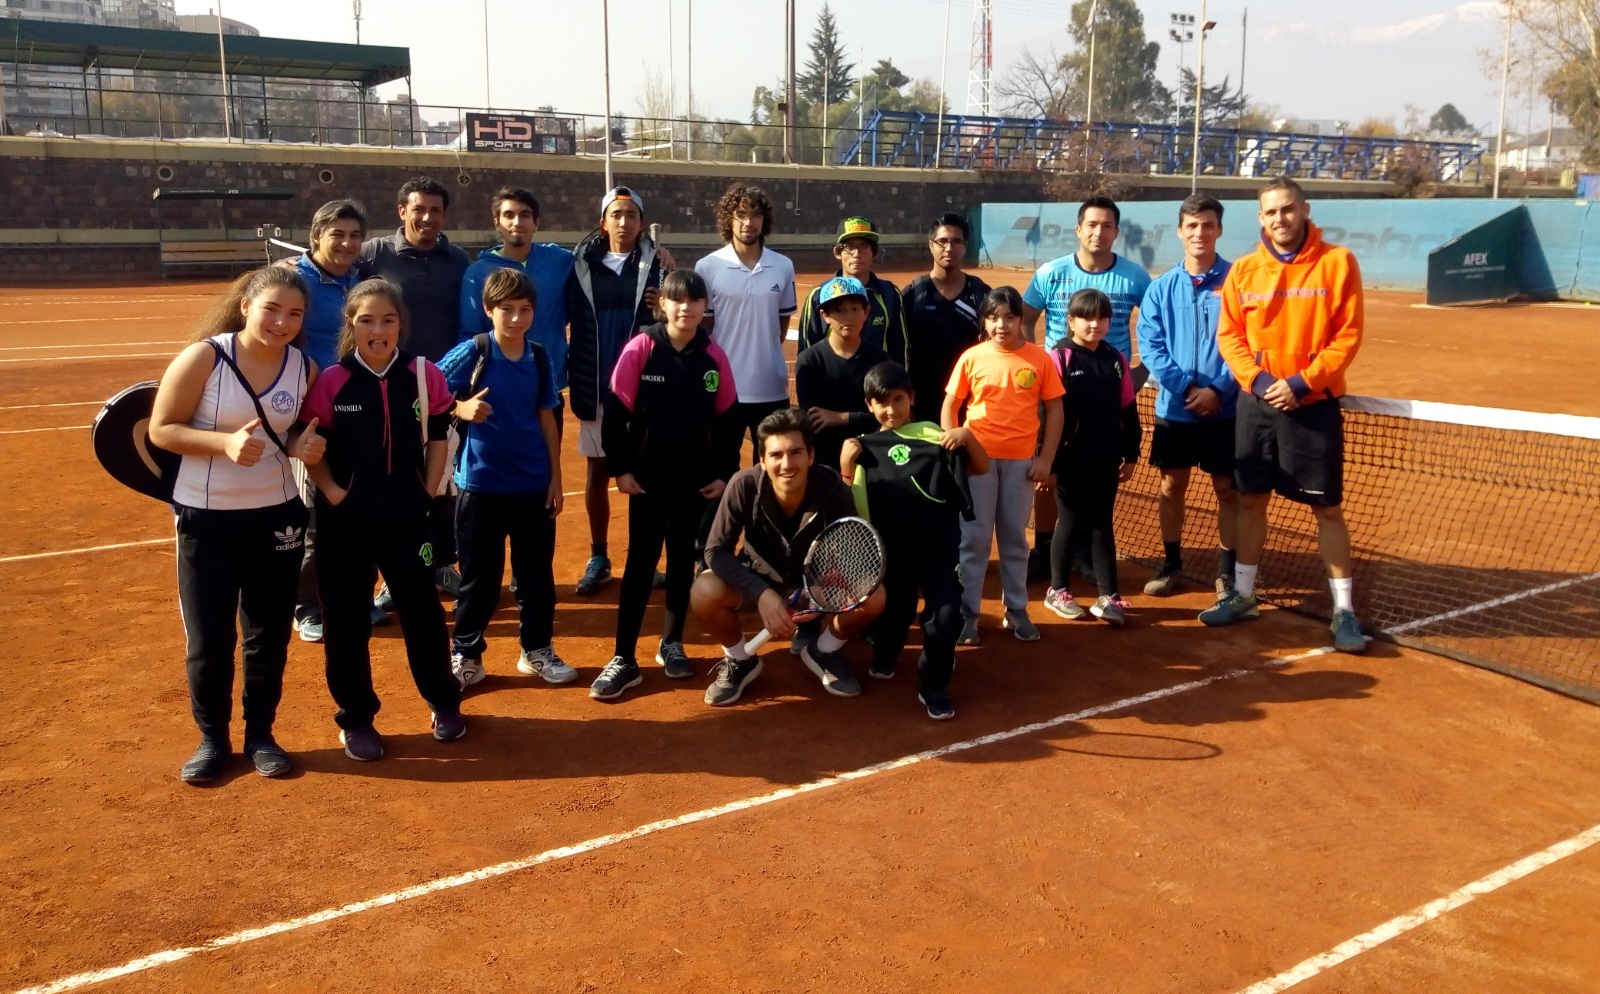 Futuros para el Tenis y Stade Francais realizaron exitosa actividad con Saavedra, Núñez, Sáez y Urzúa